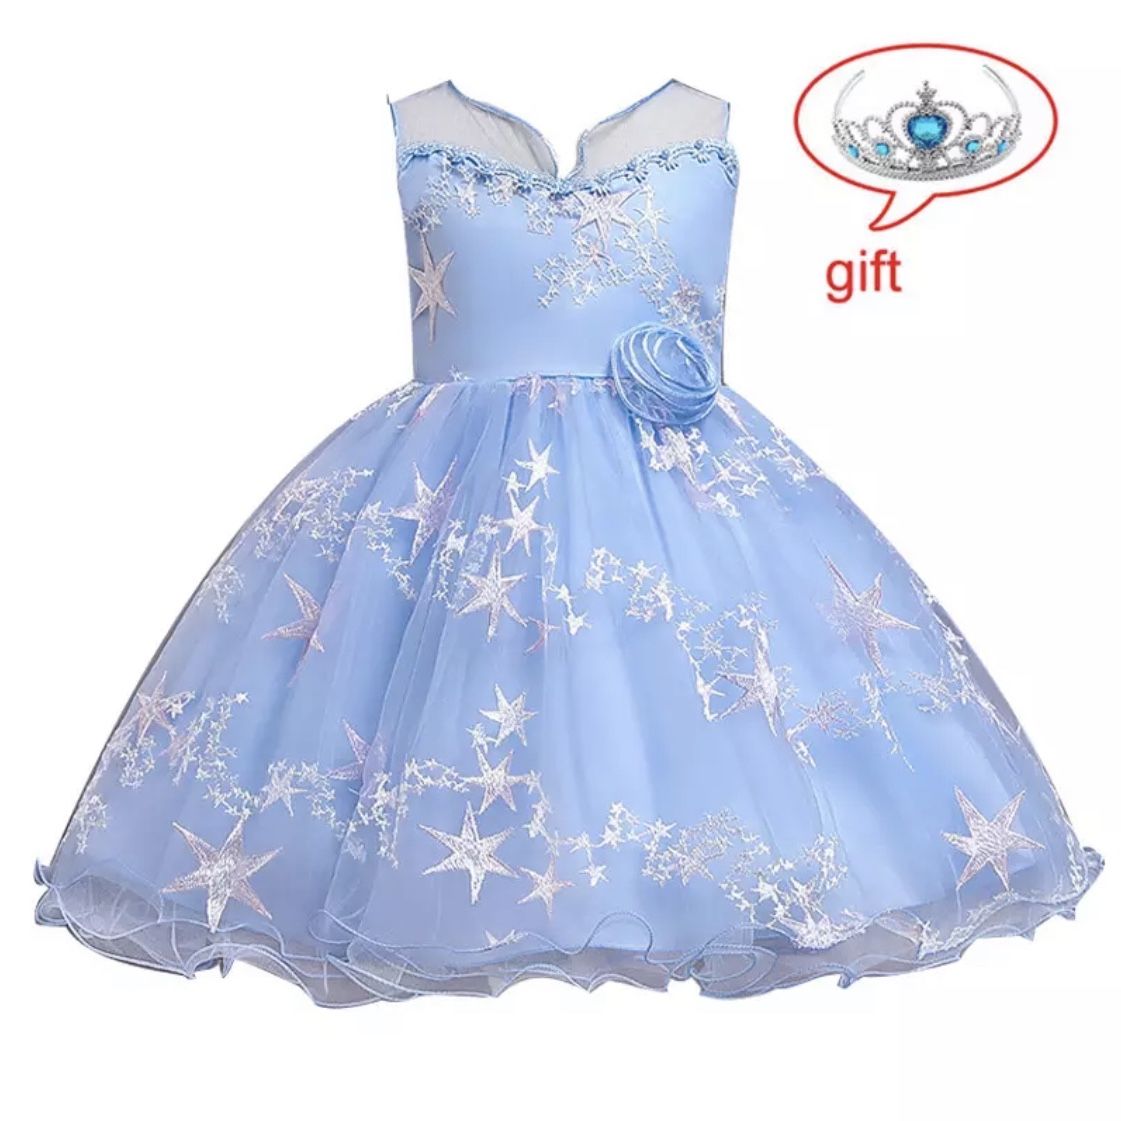 Brand new, Elegant Children Princess Dress For Girls